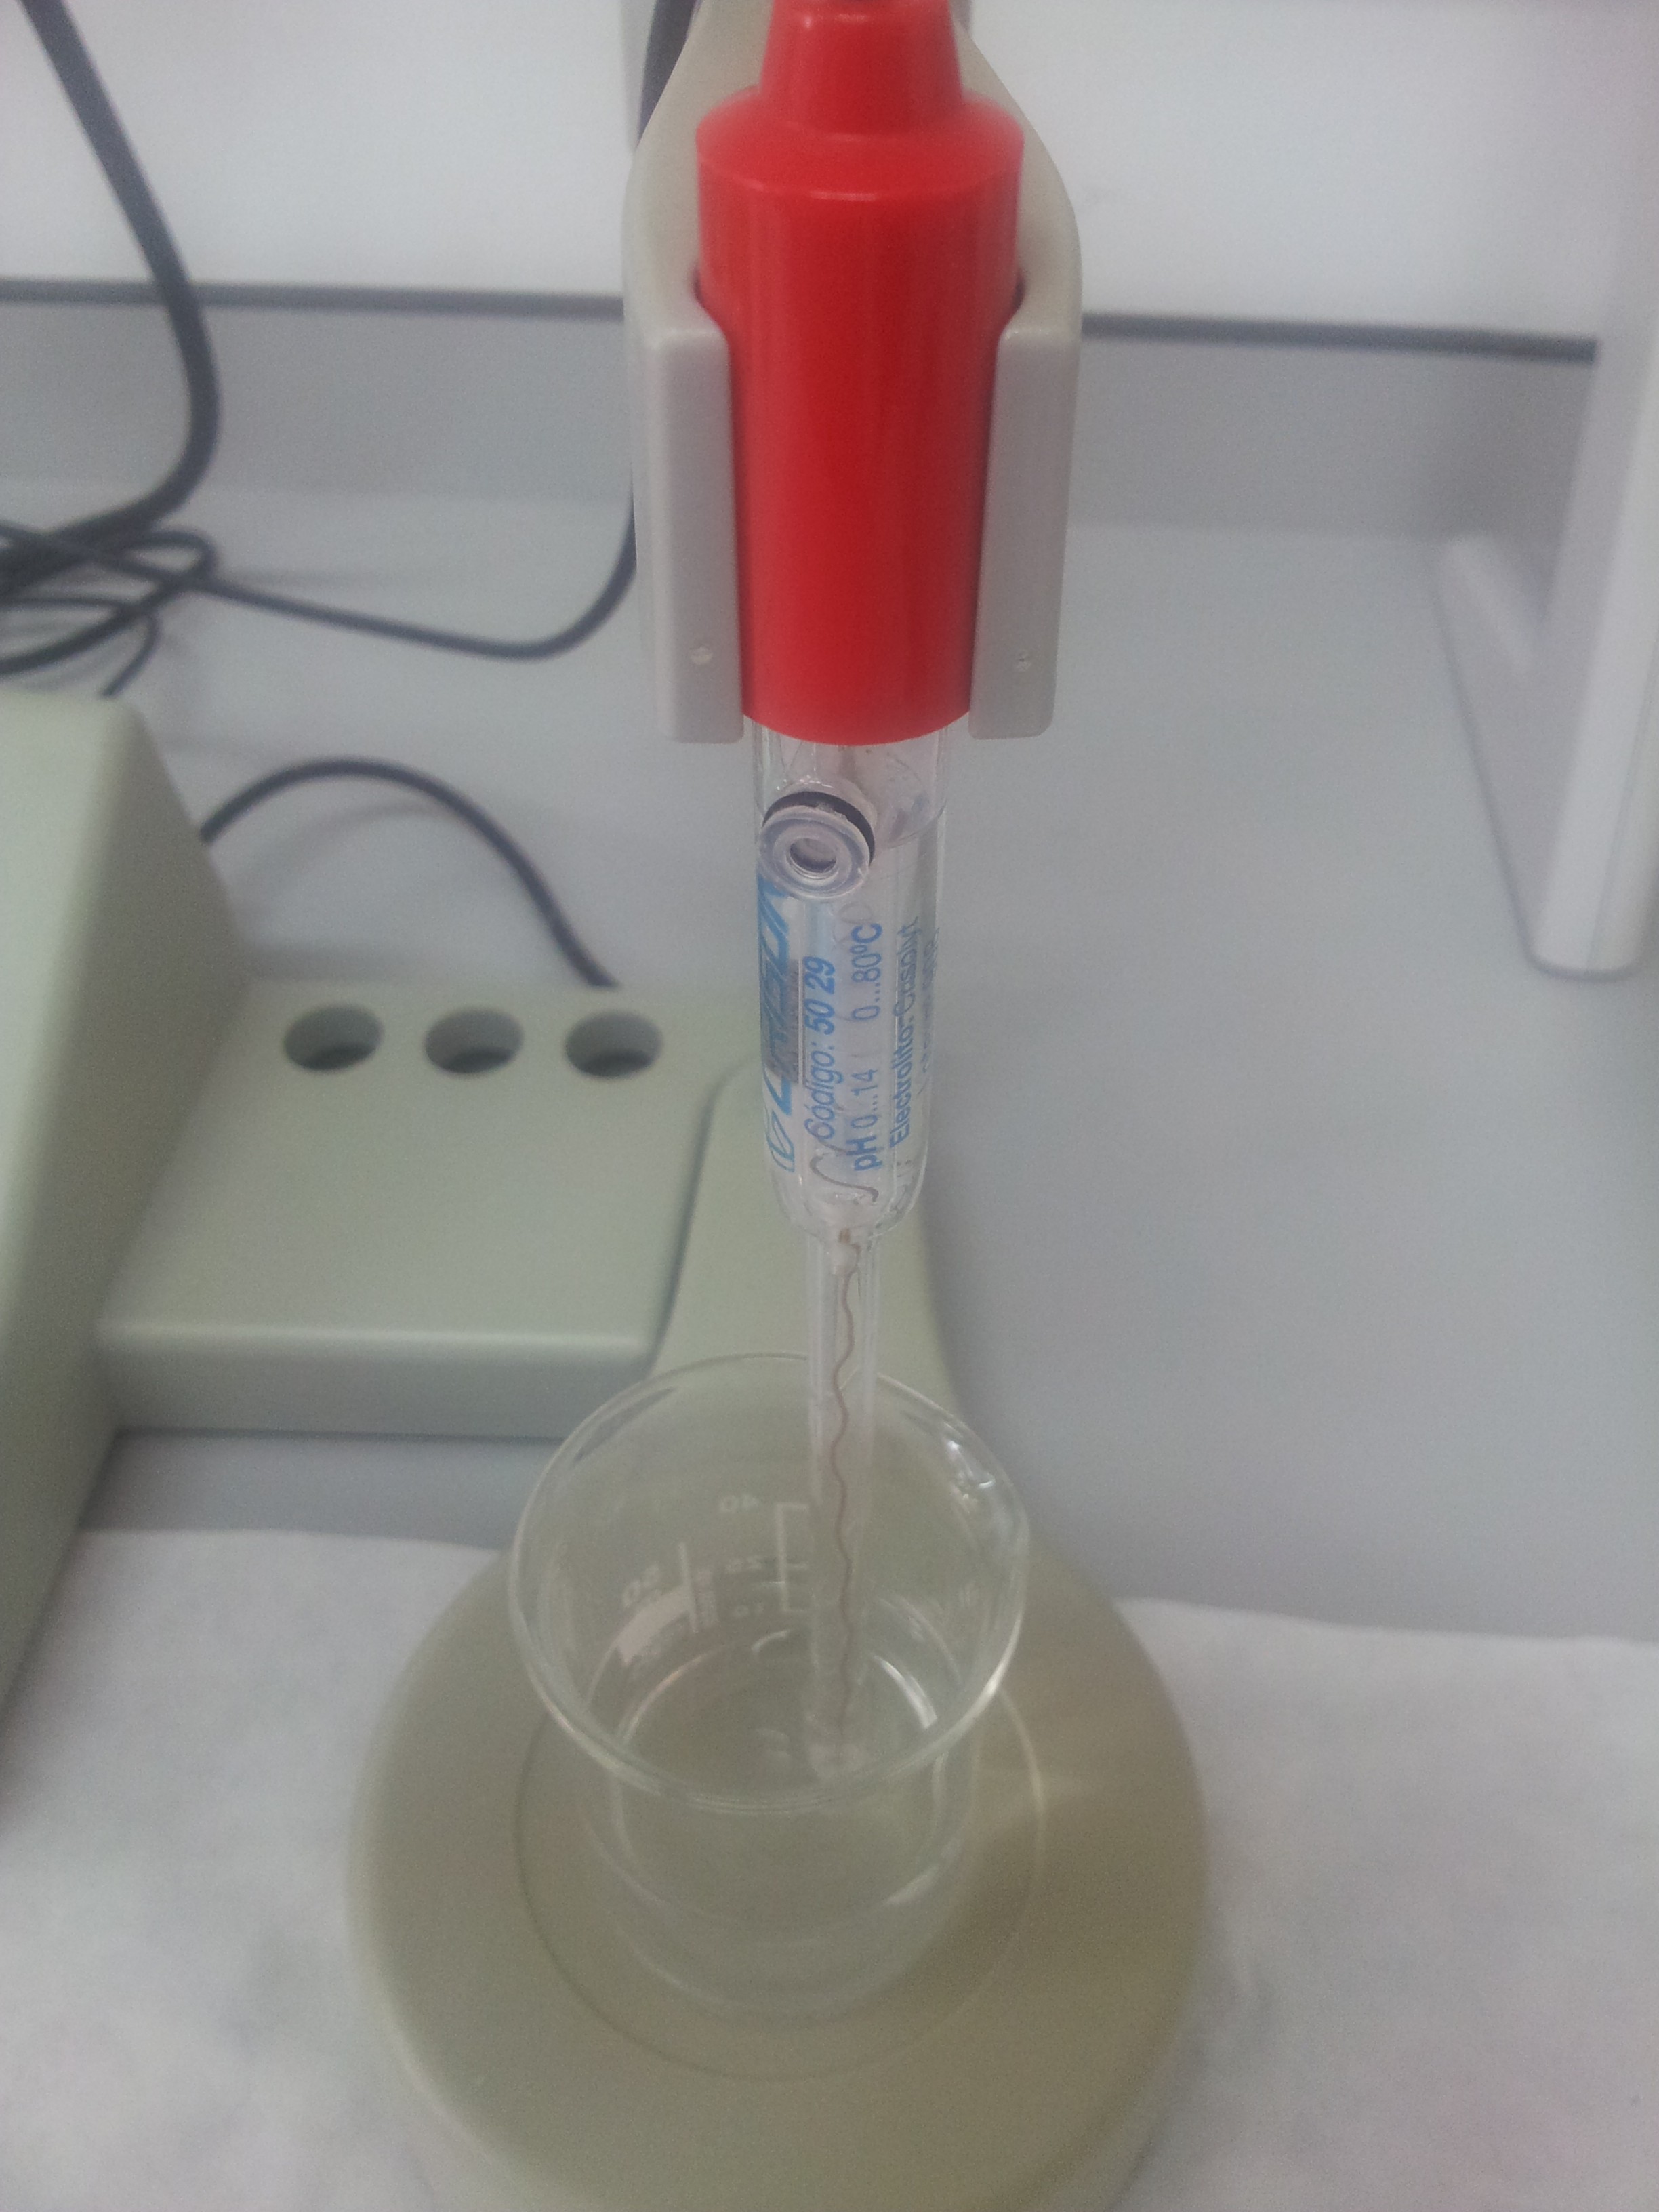 pHmetro (Medidor de pH) - Laboratorio Químico